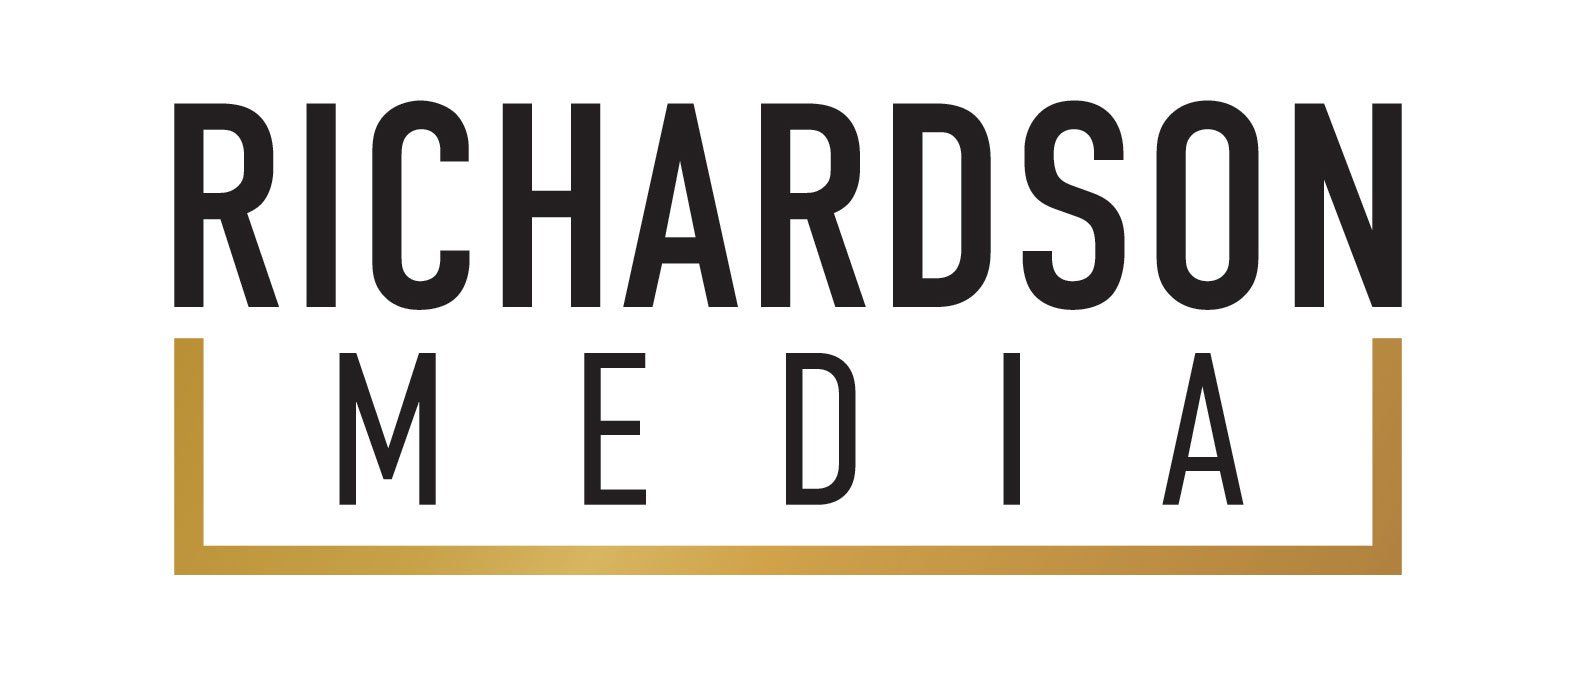 Richardson Media Eugene Oregon